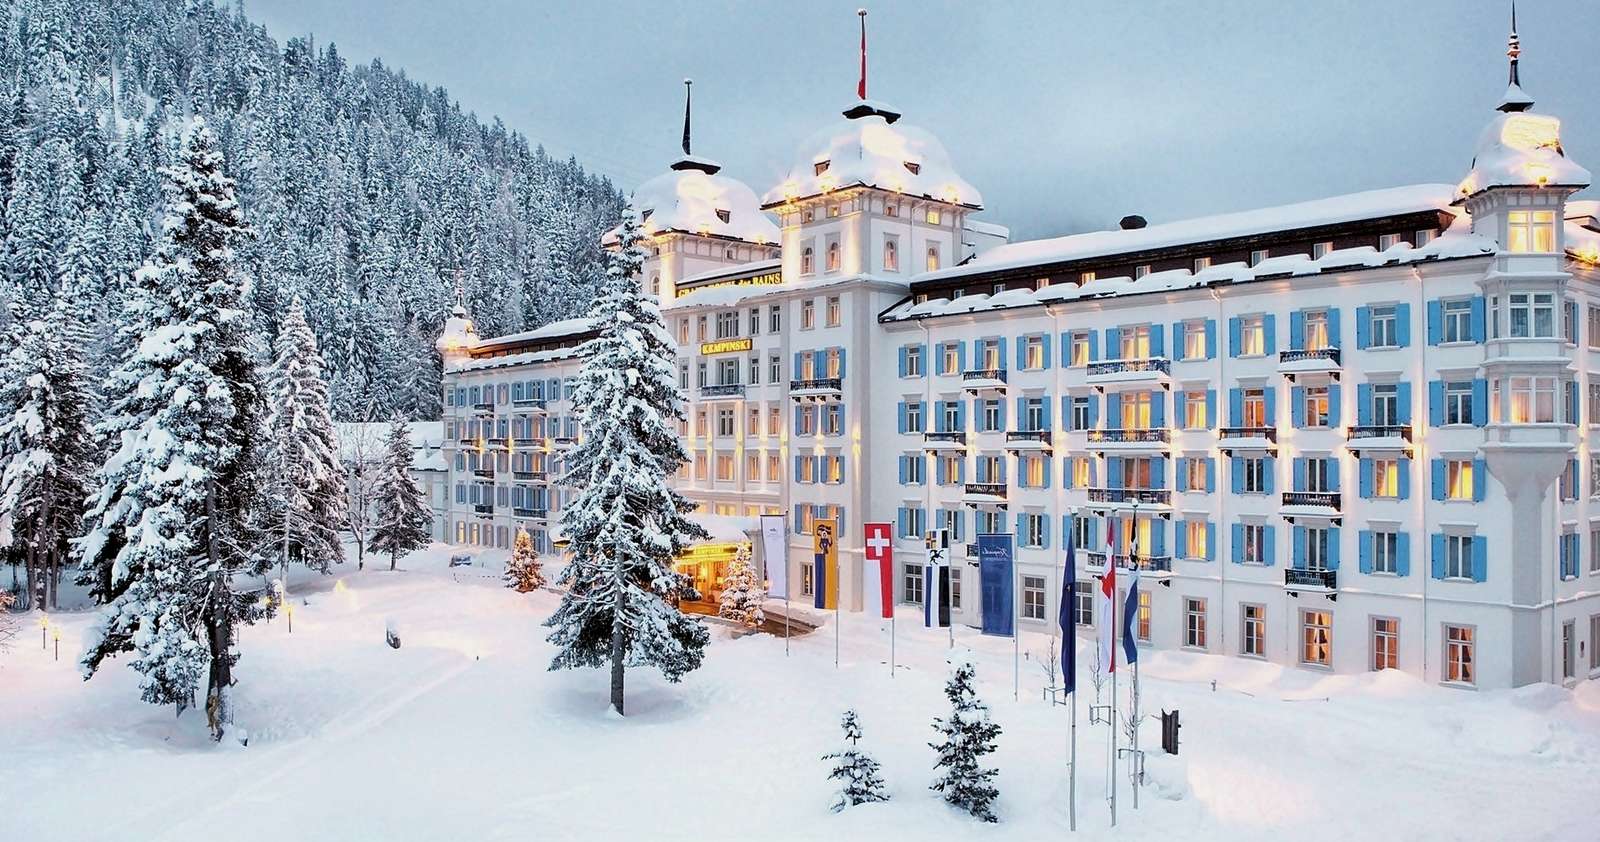 雪に覆われたホテル ジグソーパズルオンライン